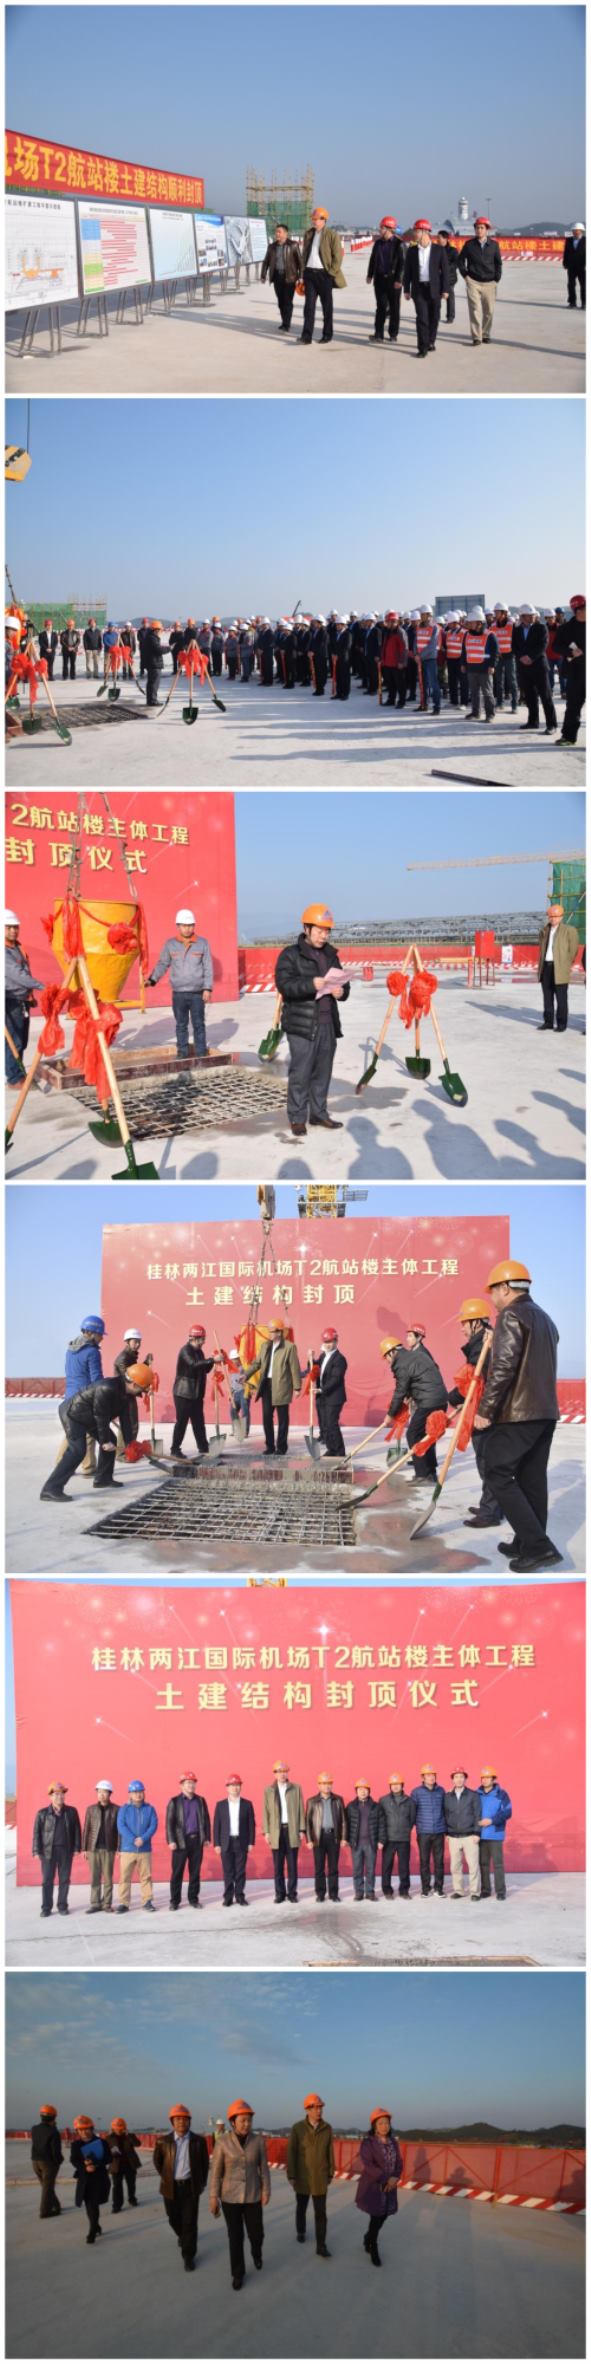 中信恒泰监理的桂林两江国际机场航站楼扩建工程航站楼主体结构工程封顶